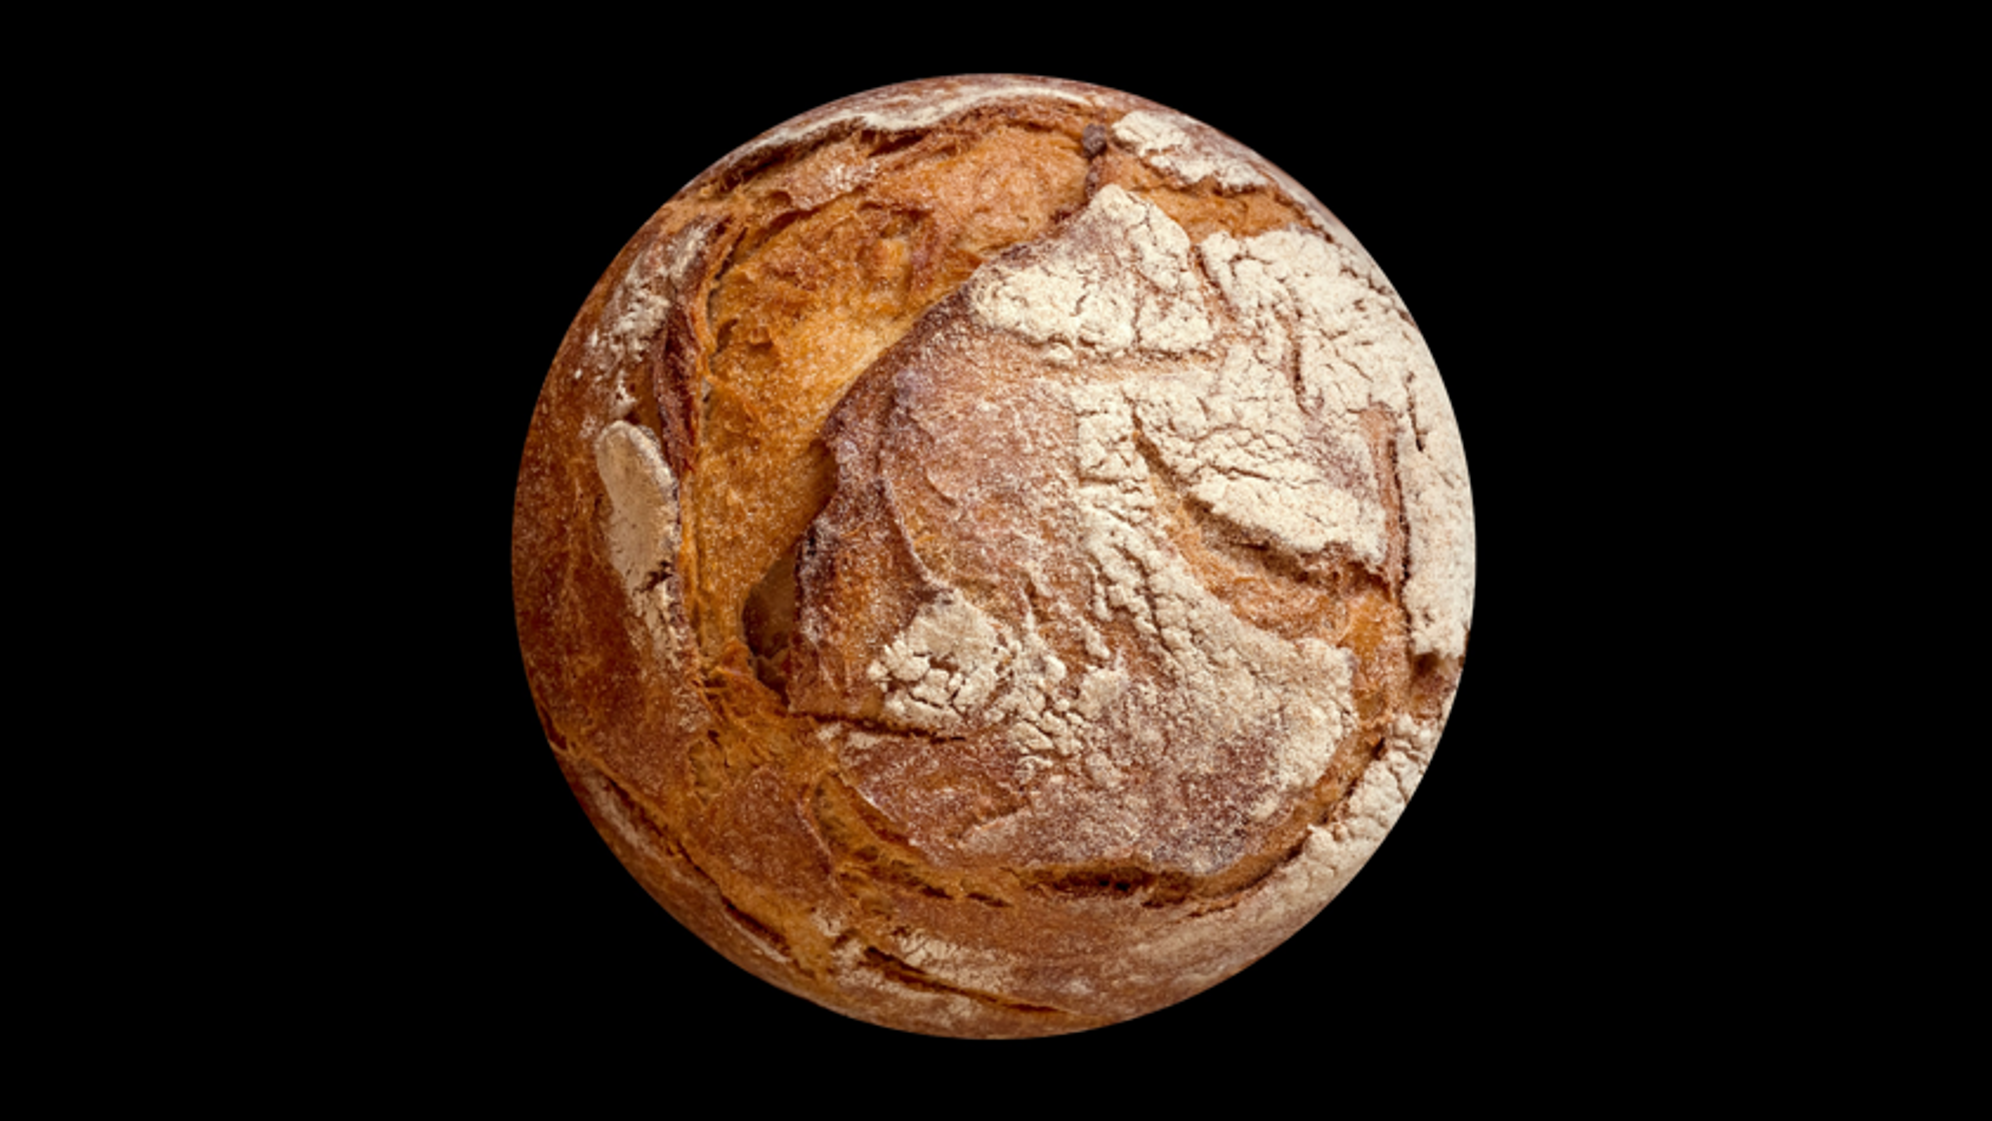 Mars bread